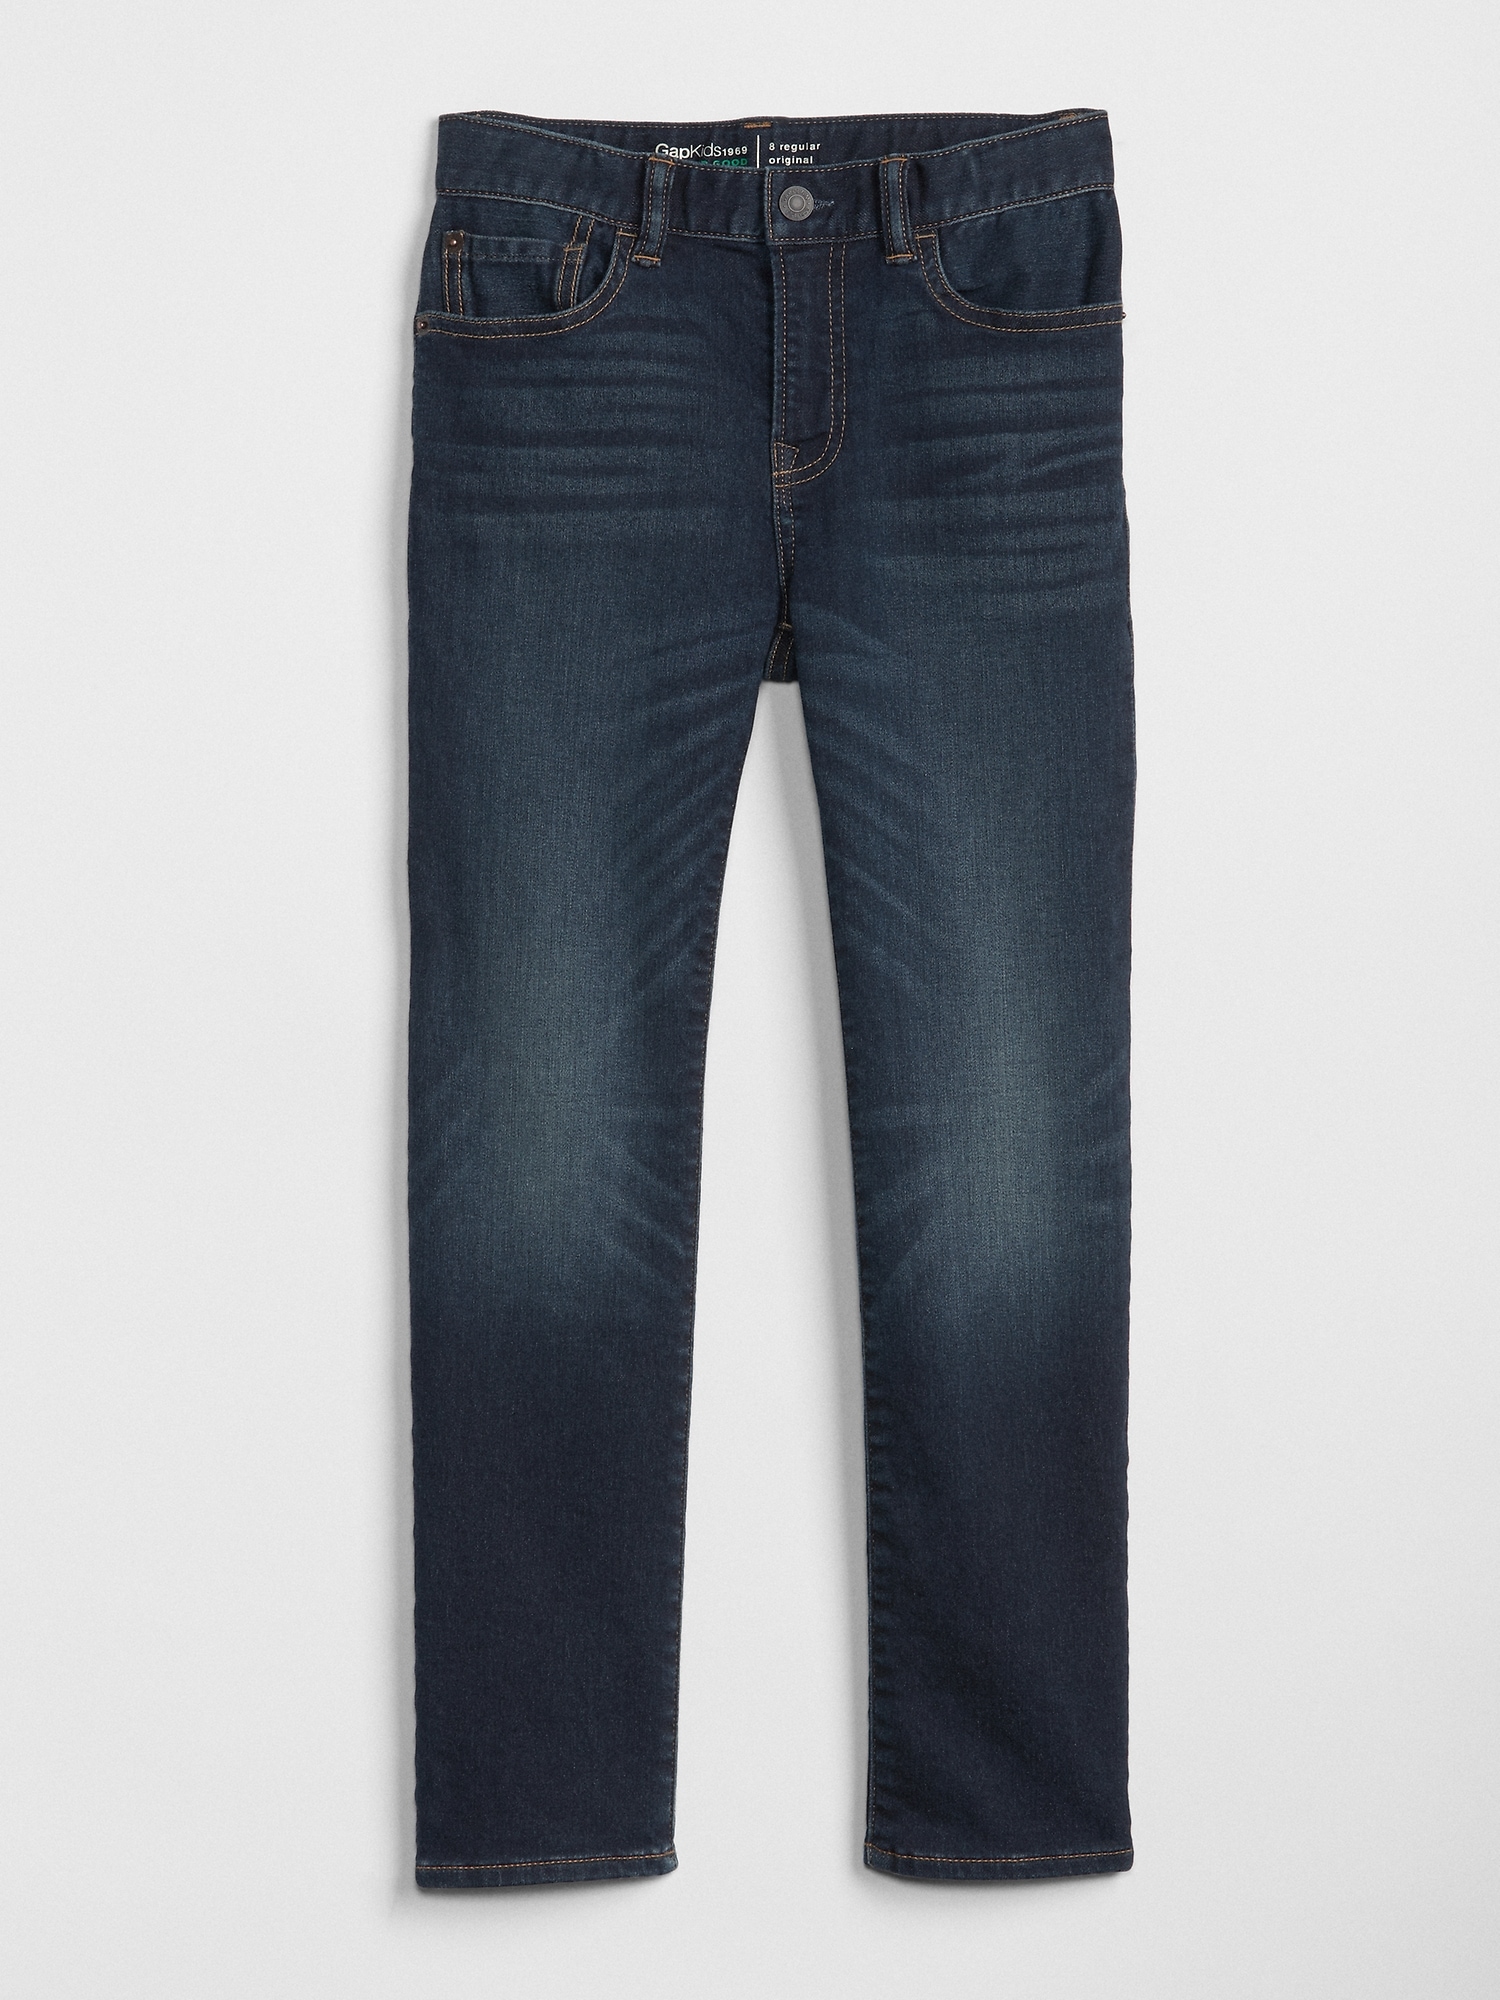 Jeans Details about boys gap kids Original fit blue denim jeans 12 slim ...